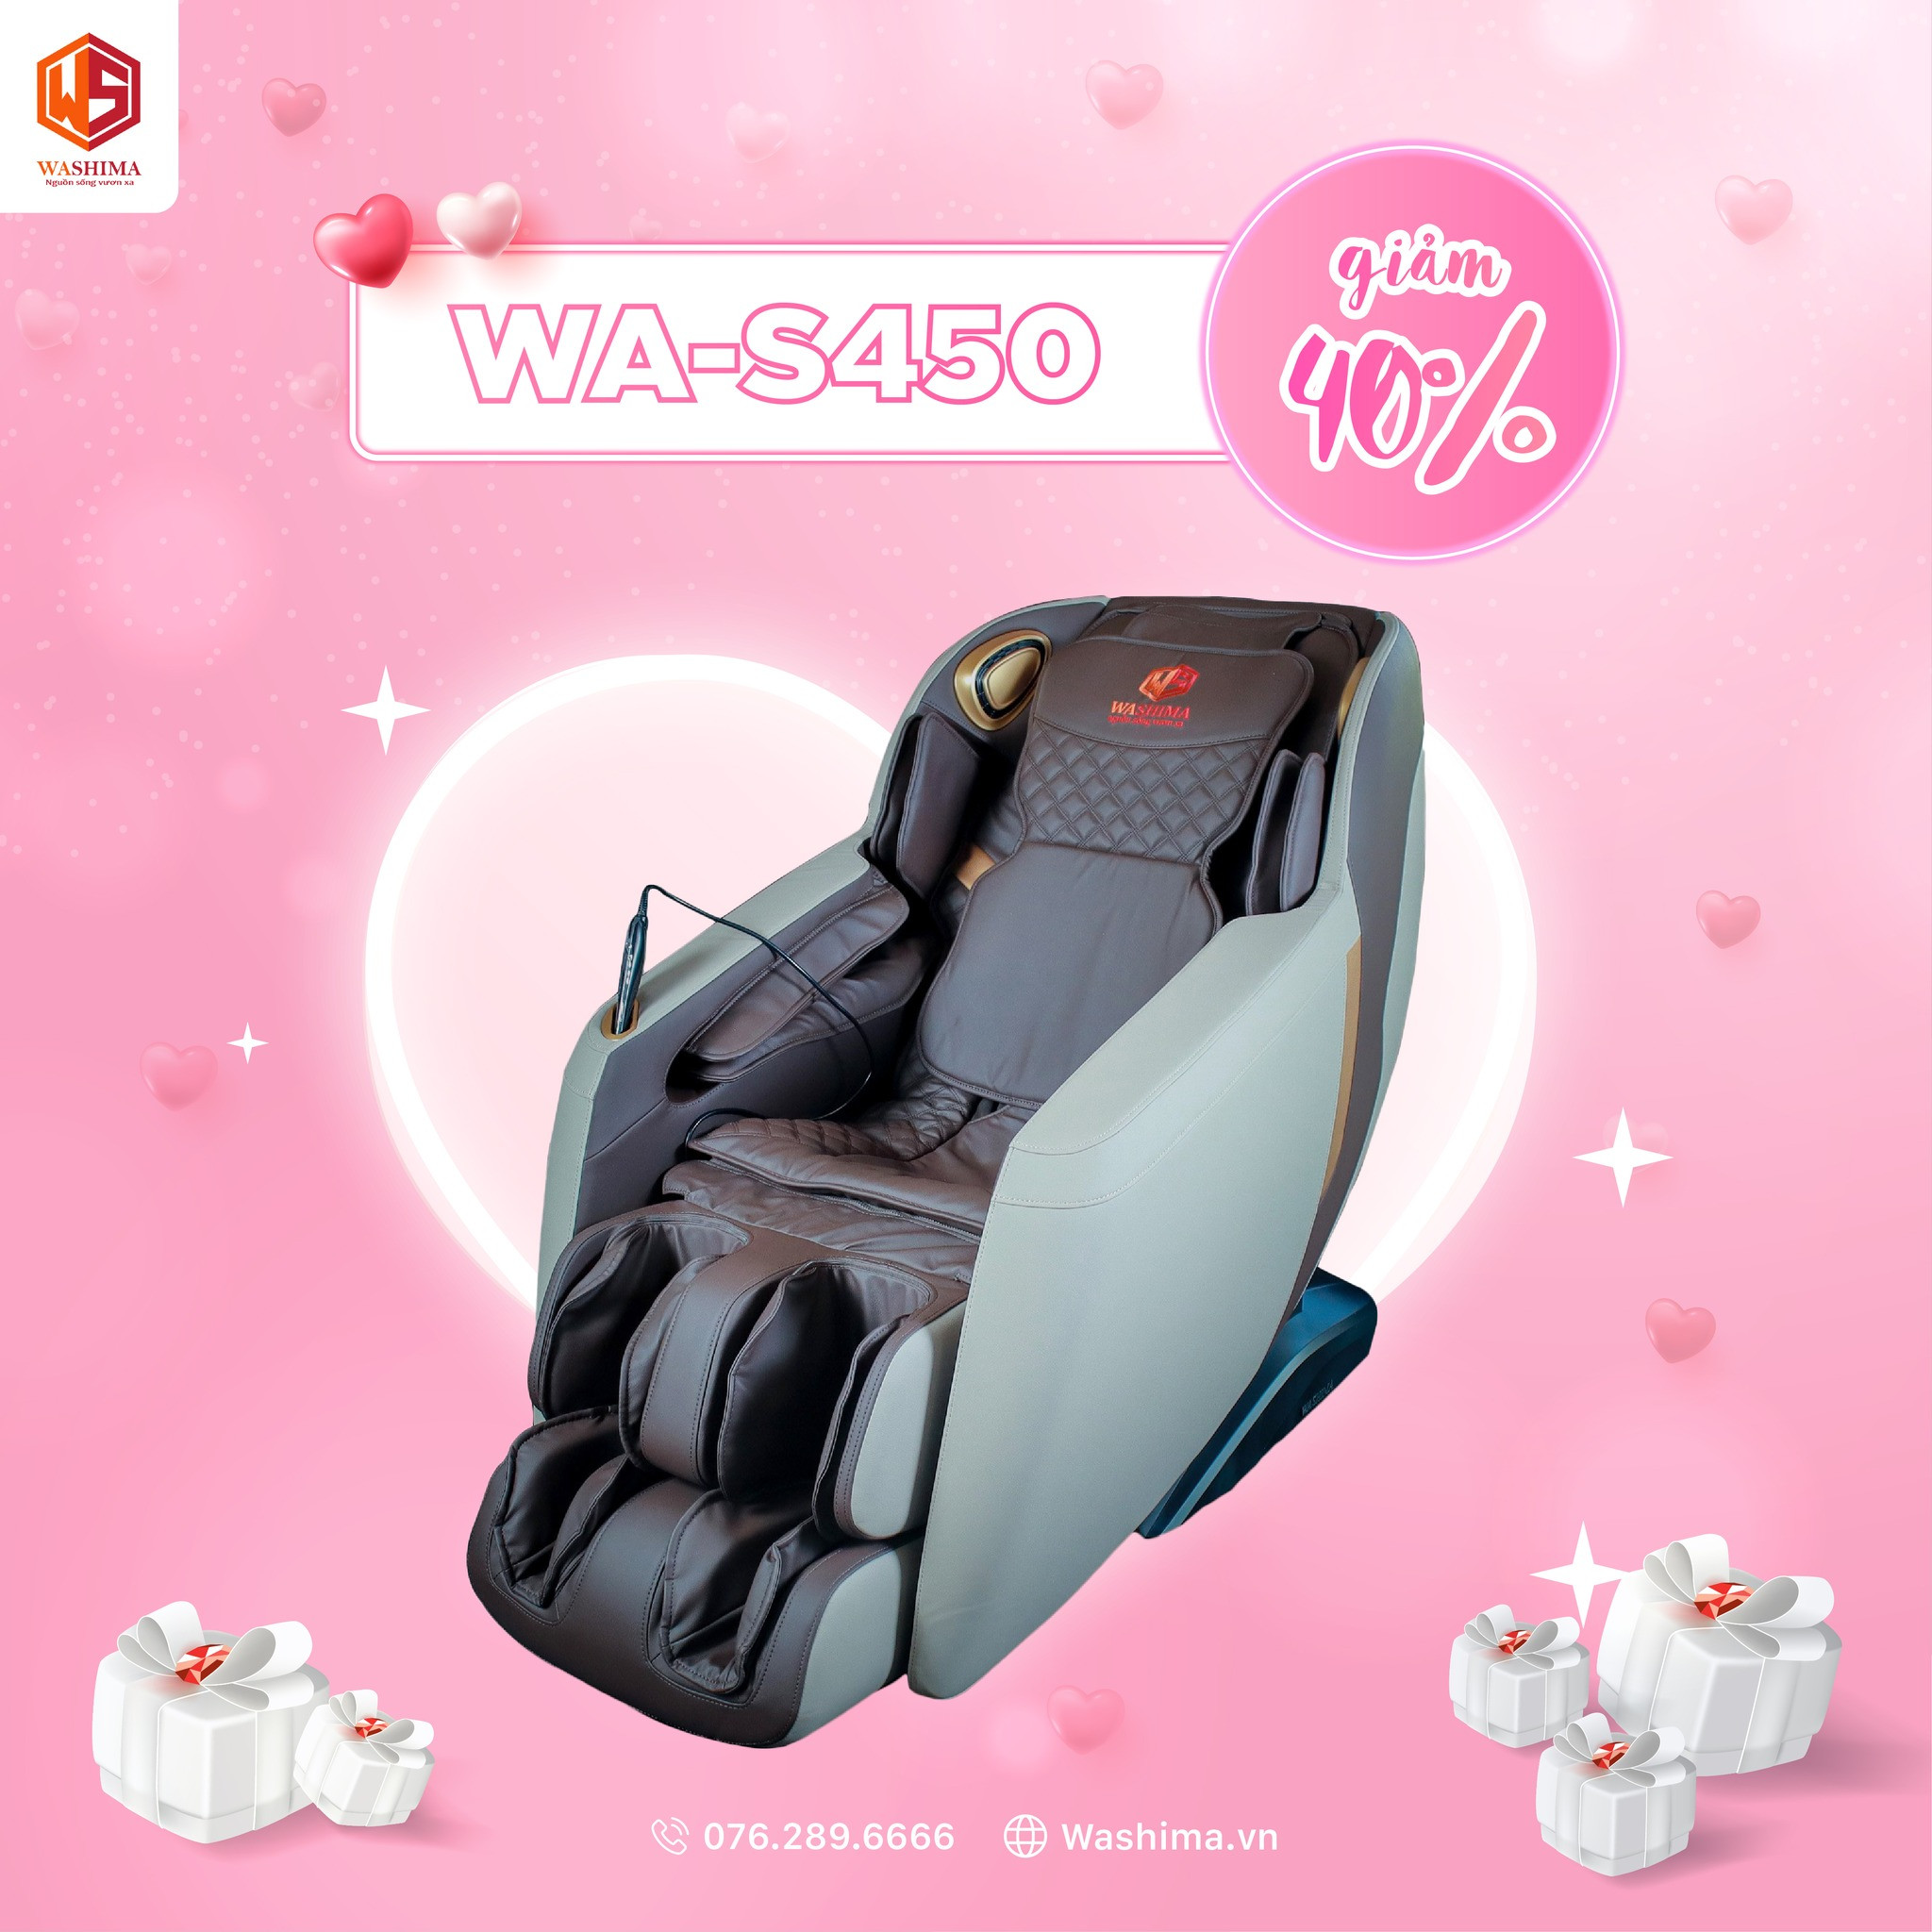 Washima WA-S450 giảm tới 40% - Một món quà cực ấn tượng dành cho bà, cho mẹ, và người phụ nữ của cuộc đời bạn